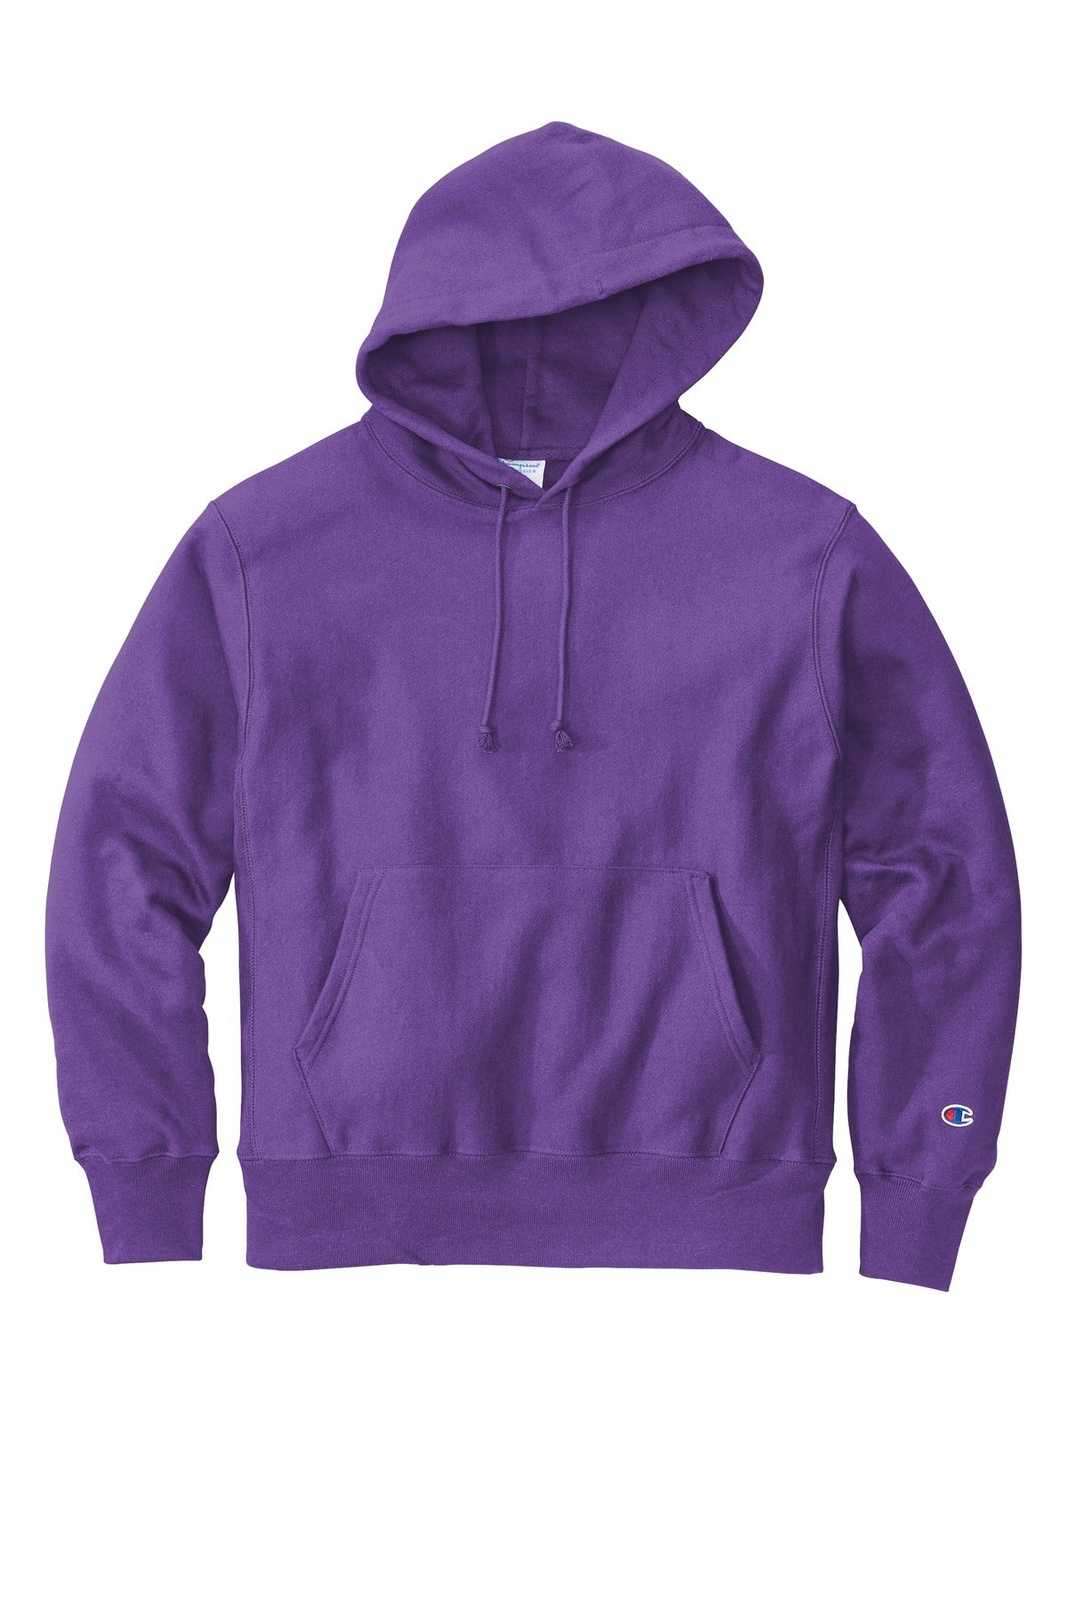 Champion S101 Reverse Weave Hooded Sweatshirt - Purple - HIT a Double - 2